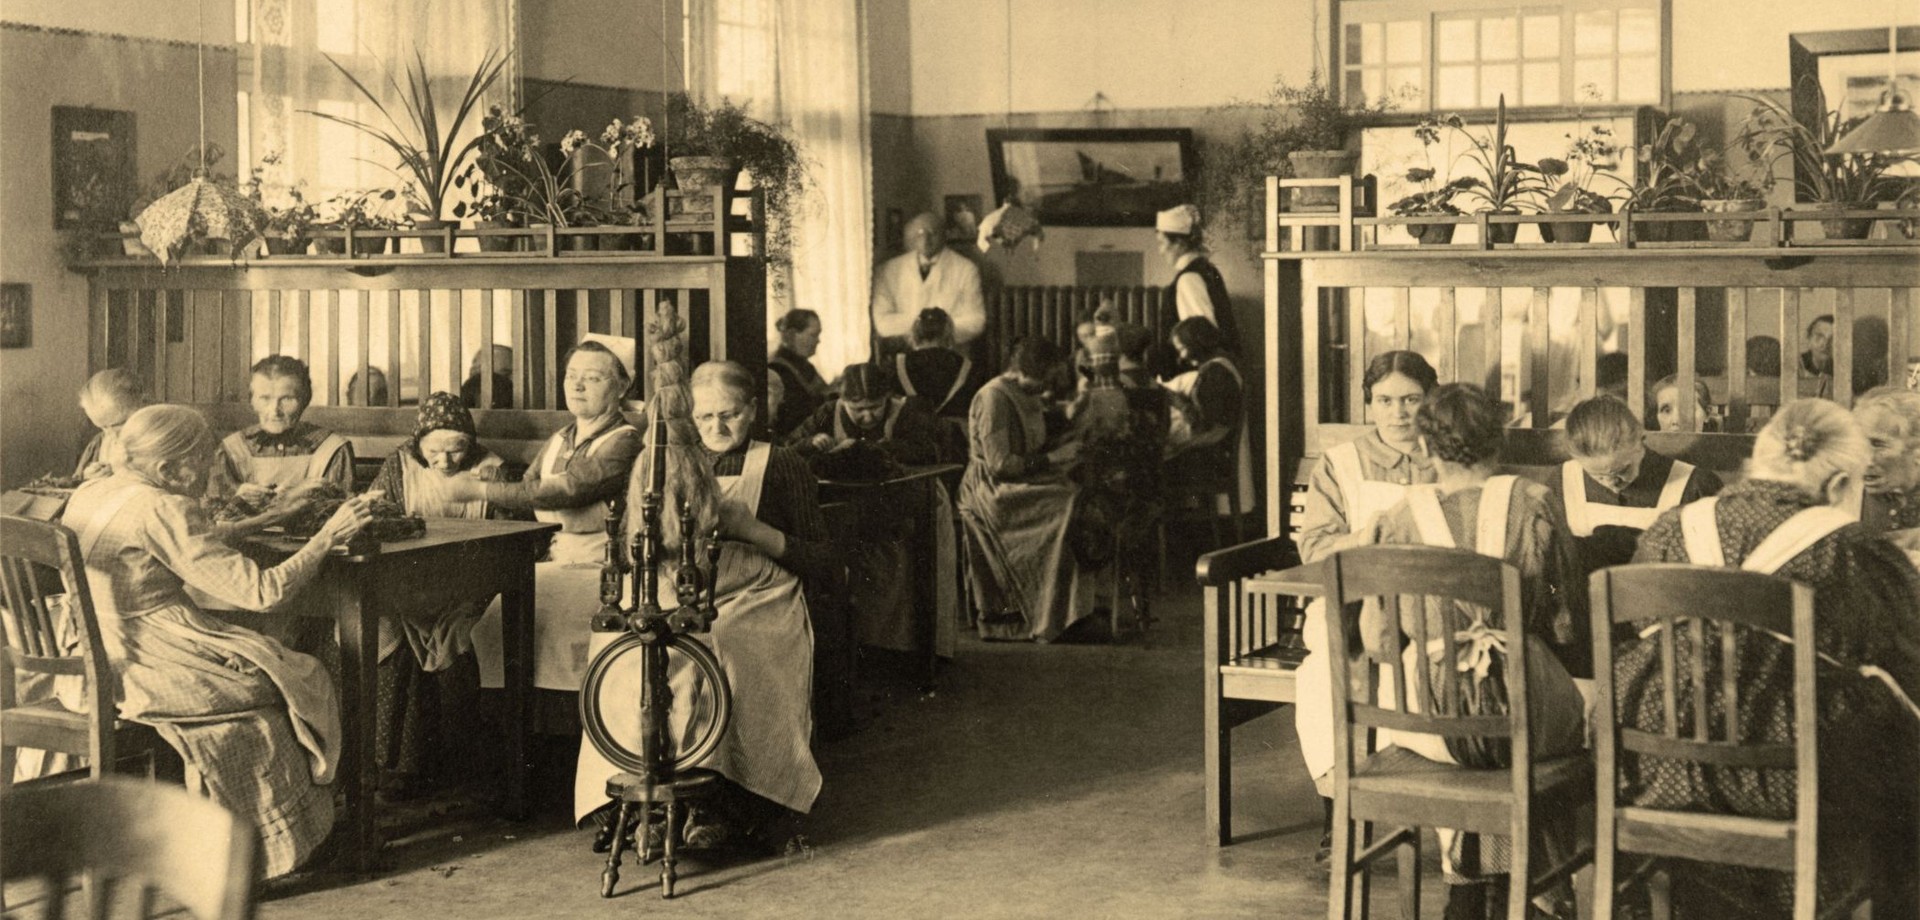 Der Gemeintschaftsraum ab 1919, in dem Frauen allen Alters Handarbeiten erledigen.